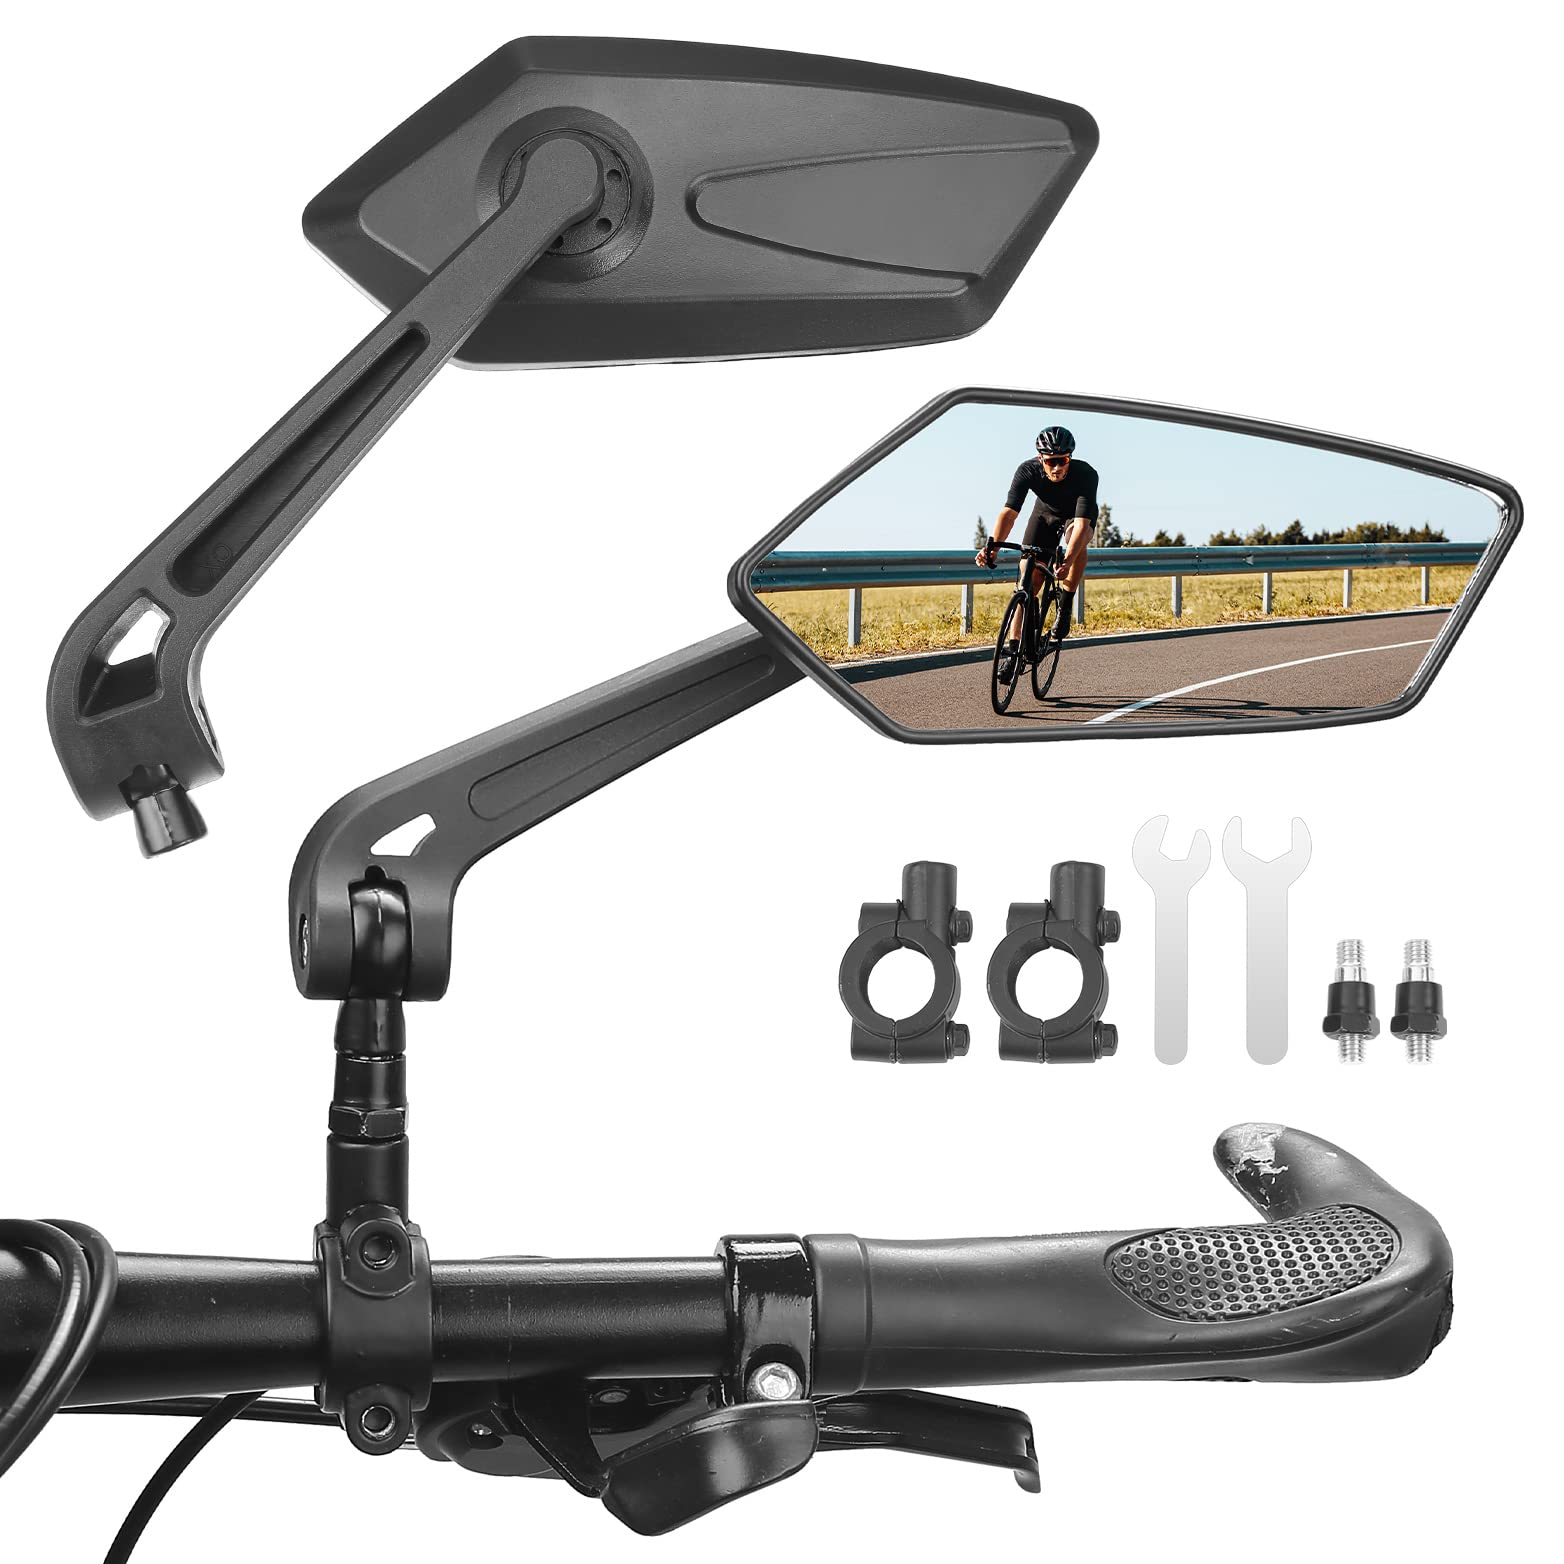 KEMIMOTO Fahrradspiegel für E-bike Extra Große Spiegelfläche, HD 360° Verstellbar Rückspiegel Fahrrad für 20-24mm Lenker, Fahrradspiegel Klappbar mit Linke und Rechte für Mountainbike Rennrad von KEMIMOTO